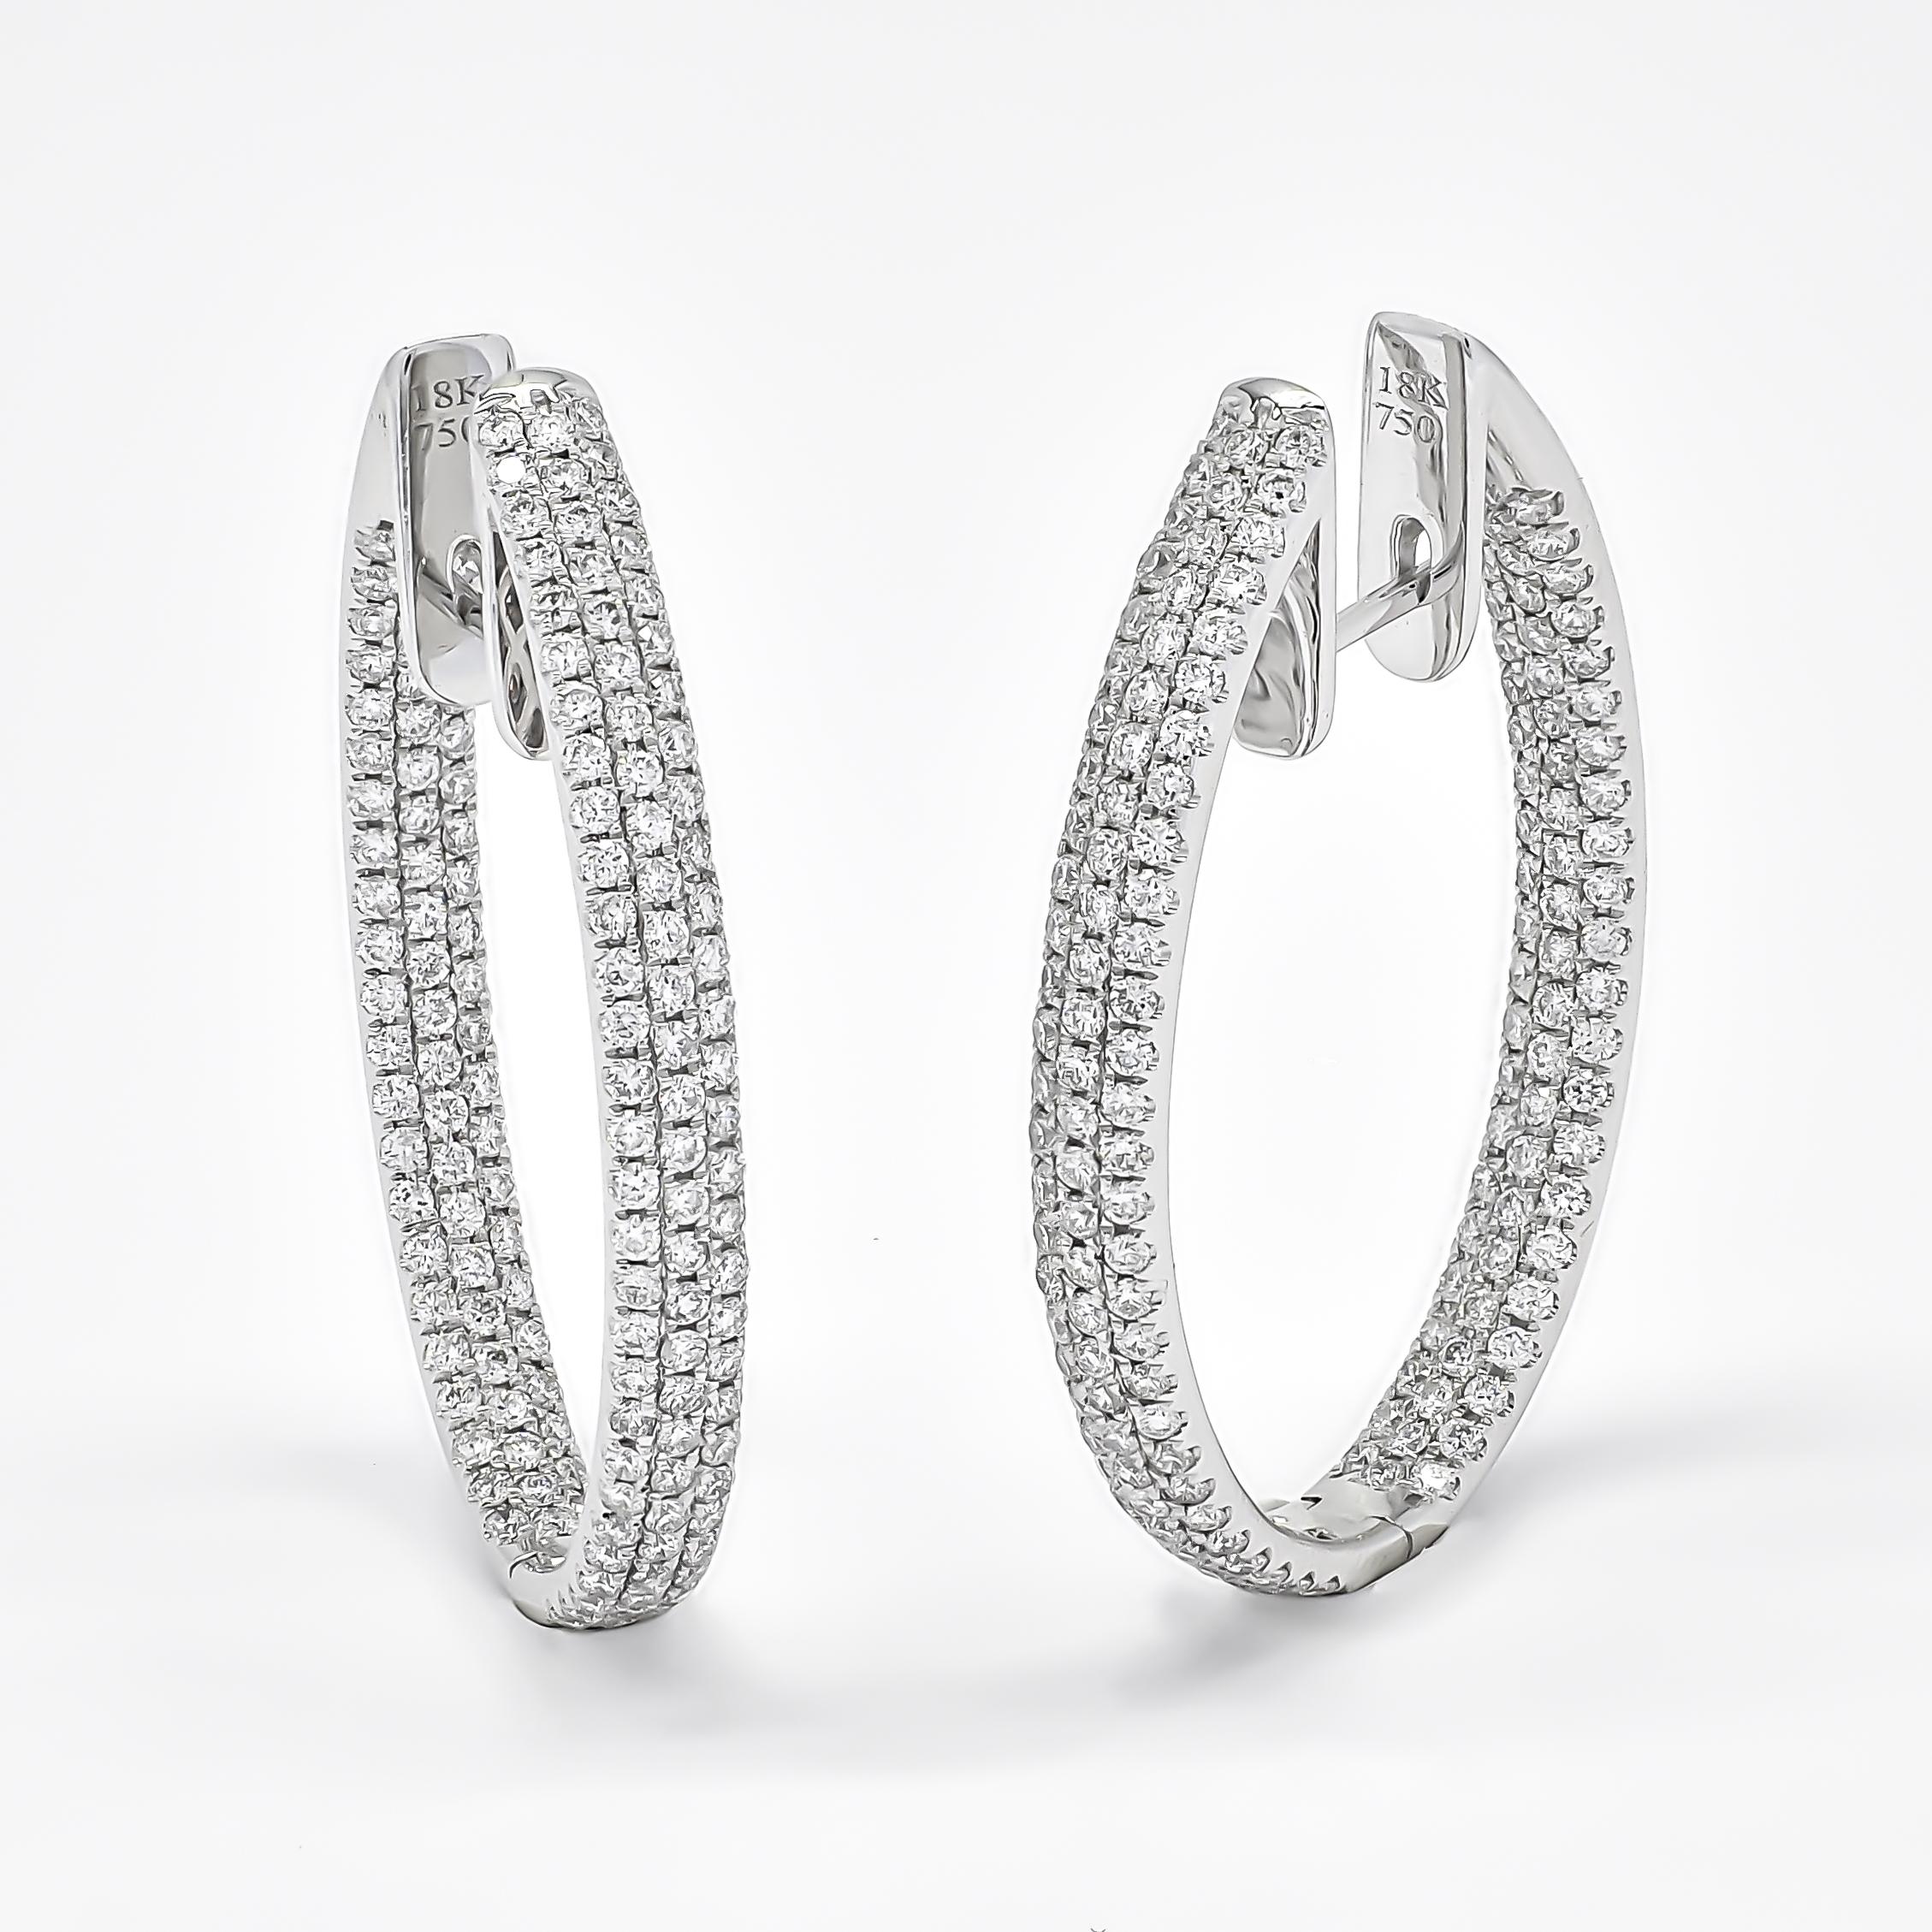 Tauchen Sie ein in die schlichte Eleganz unserer exklusiven Designer-Diamantringe, die mit unvergleichlicher Liebe zum Detail gefertigt wurden. Diese exquisiten Creolen bestechen durch ein fesselndes 